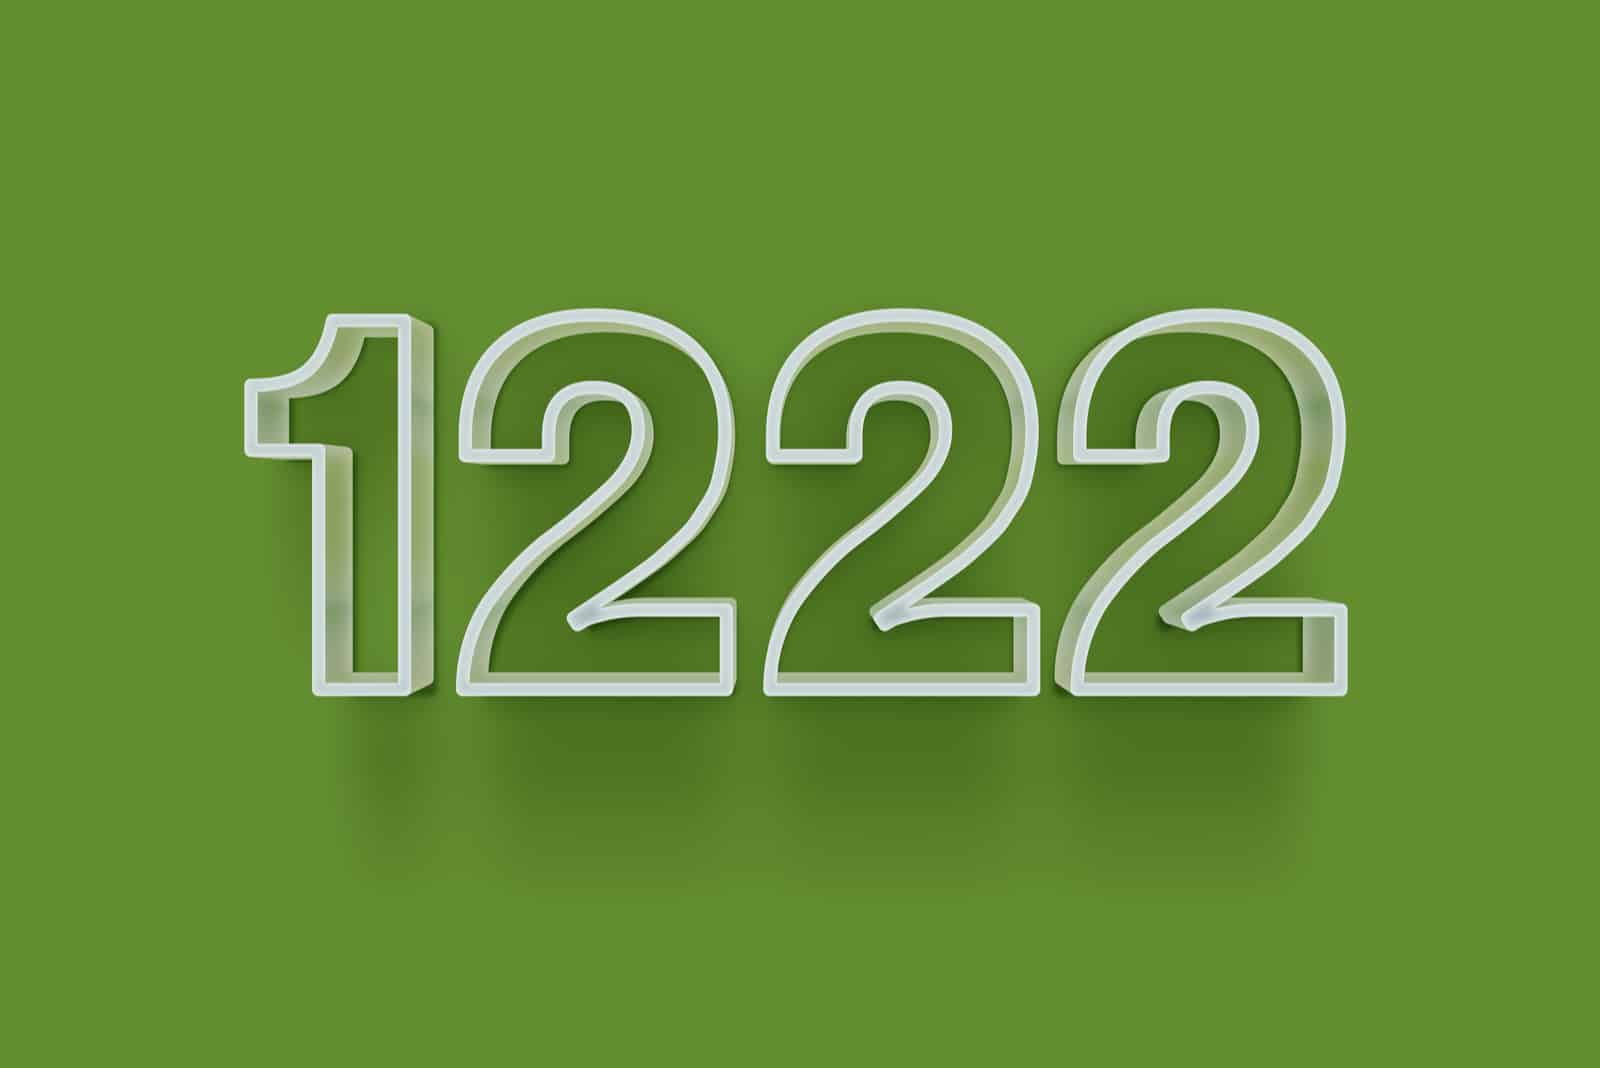 weiße Zahl 1222 auf grünem Hintergrund